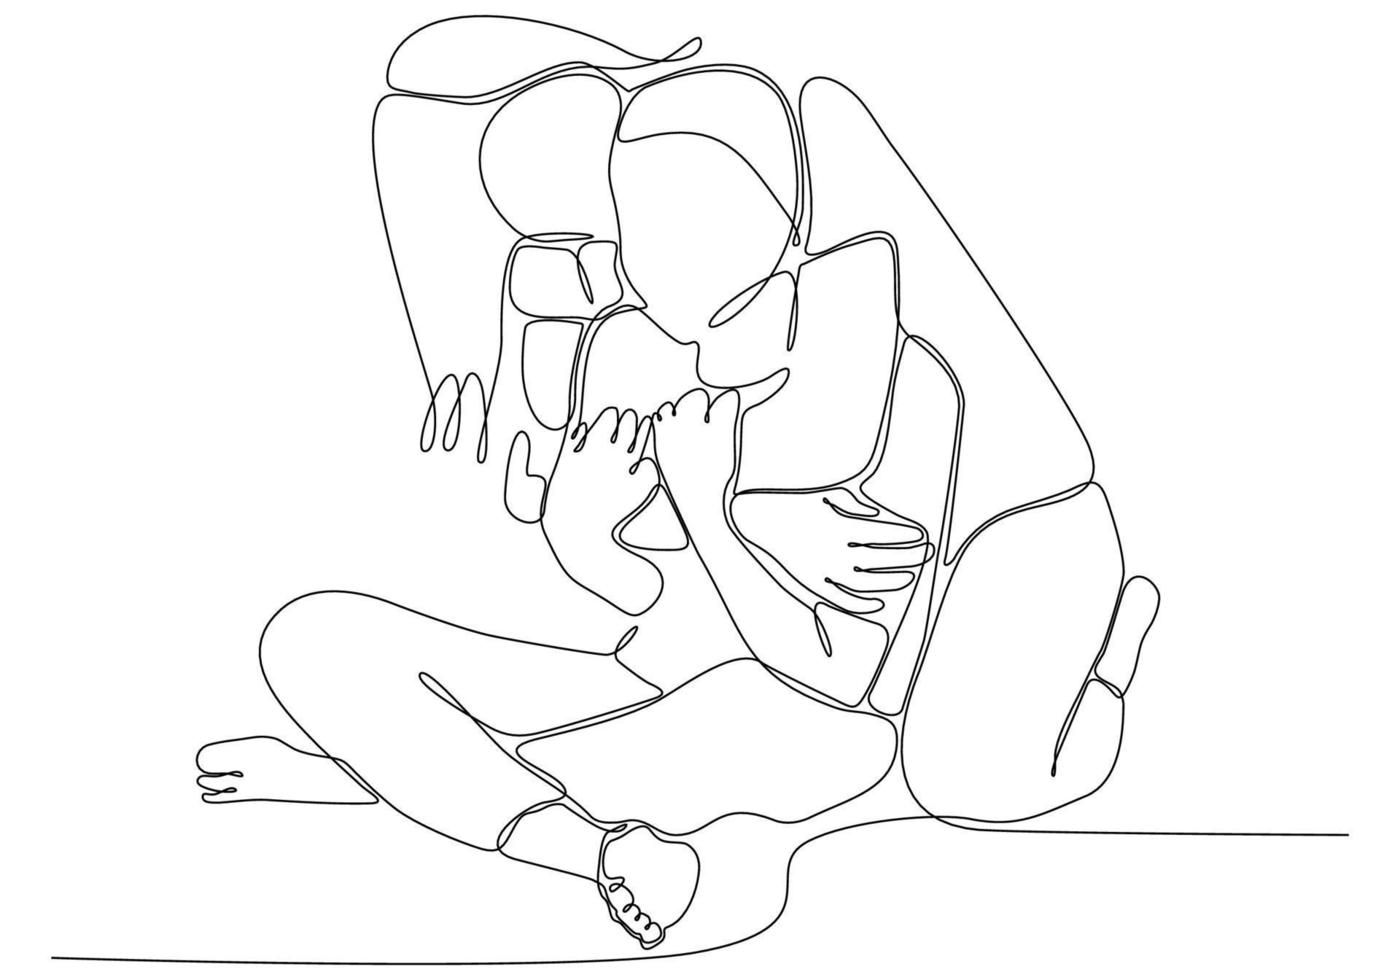 desenho de linha contínua de mulheres alegres, abraçando-se. duas mulheres se abraçando vetor